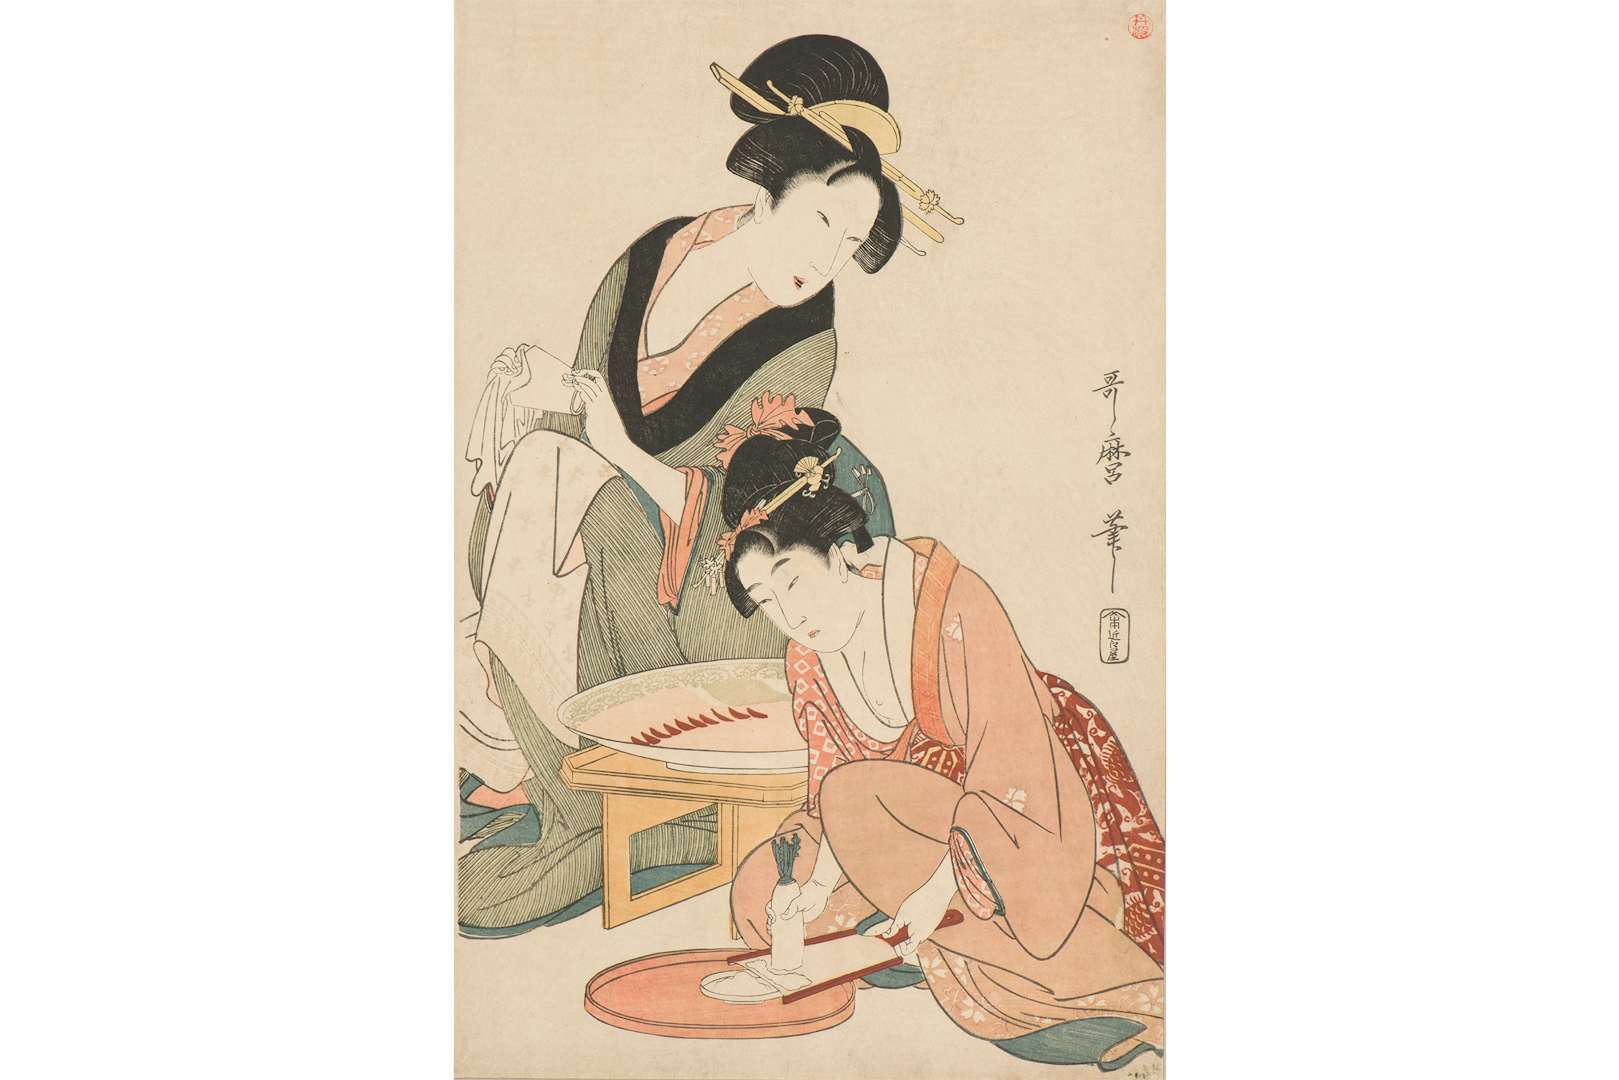 美人画から装い 労働 春画まで 浮世絵に描かれた 女のくらし をたどる展覧会が渋谷区立松濤美術館で開催 美術手帖